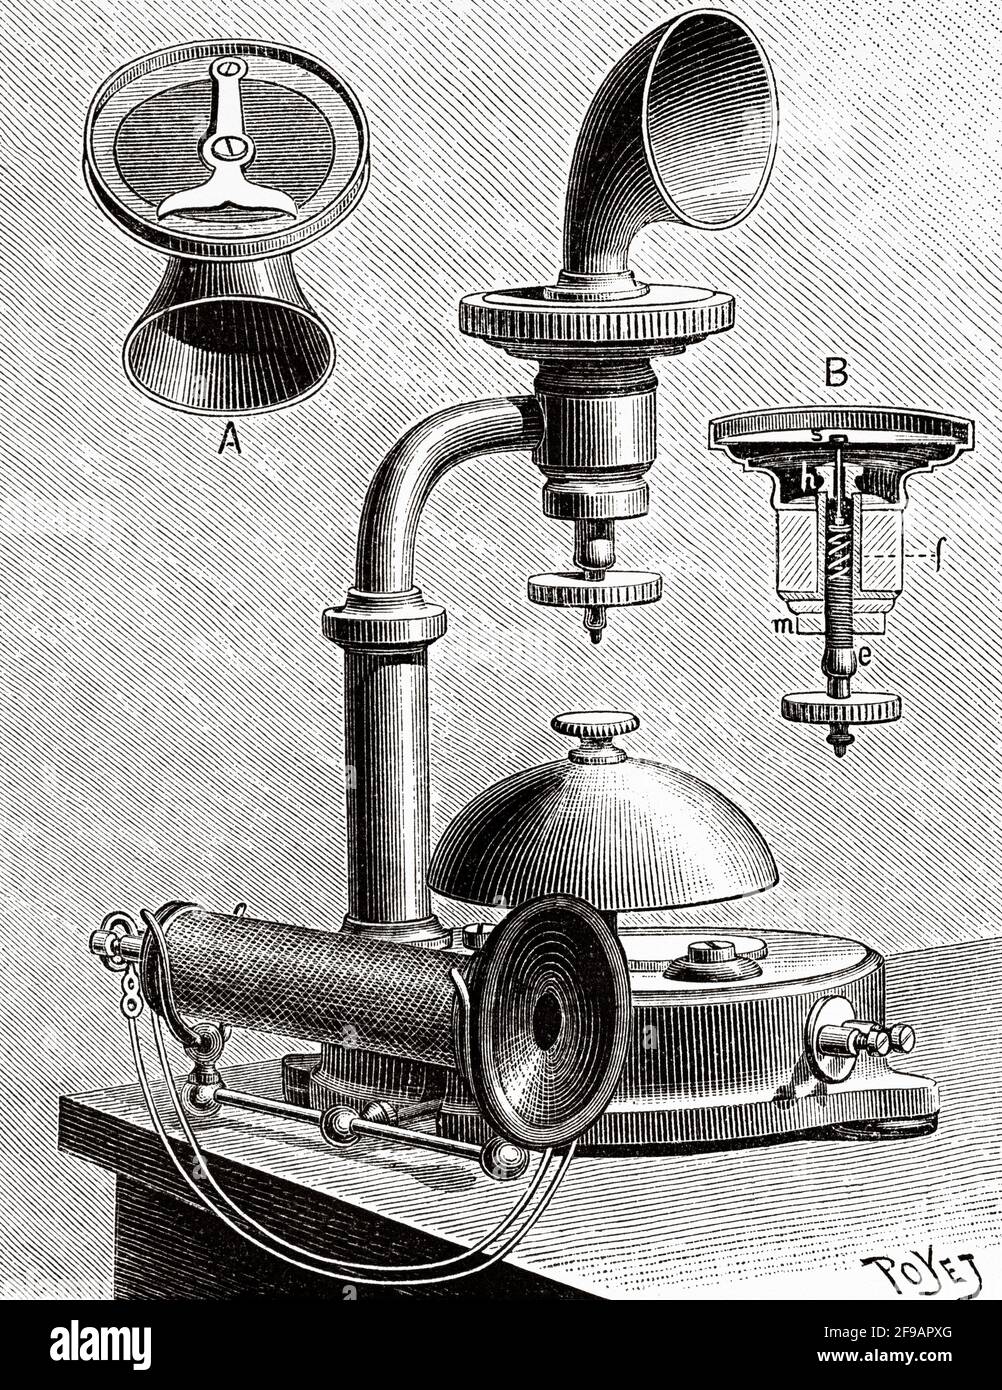 La téléphonie à Stockholm à la fin des années 1800. Modèle de téléphone Ericsson. Ancienne illustration gravée du XIXe siècle de la nature 1889 Banque D'Images